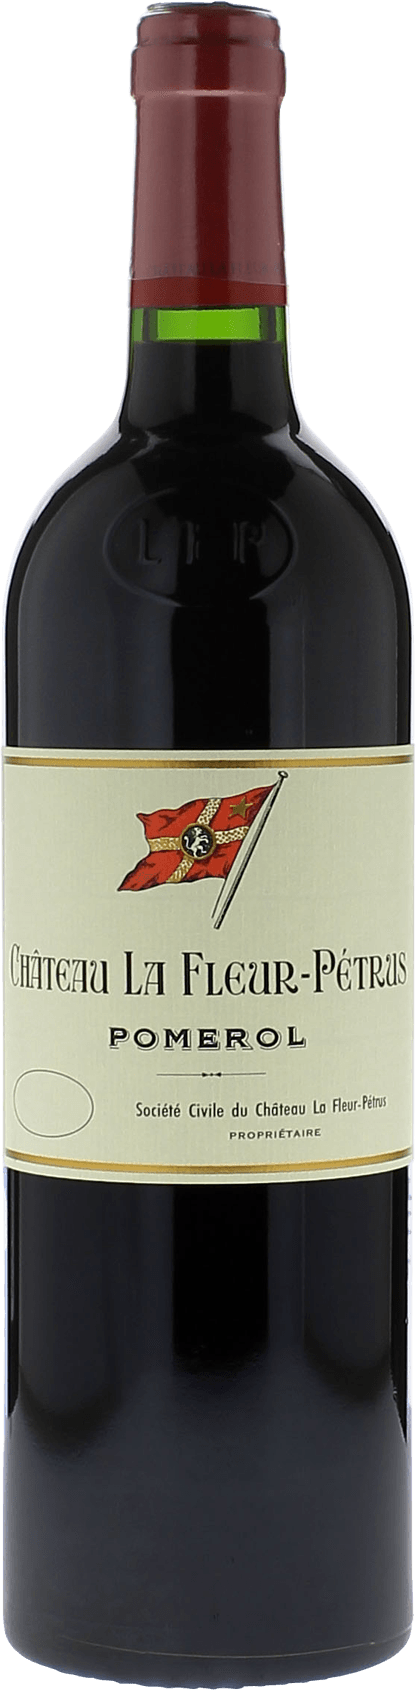 La fleur petrus 2001  Pomerol, Bordeaux rouge